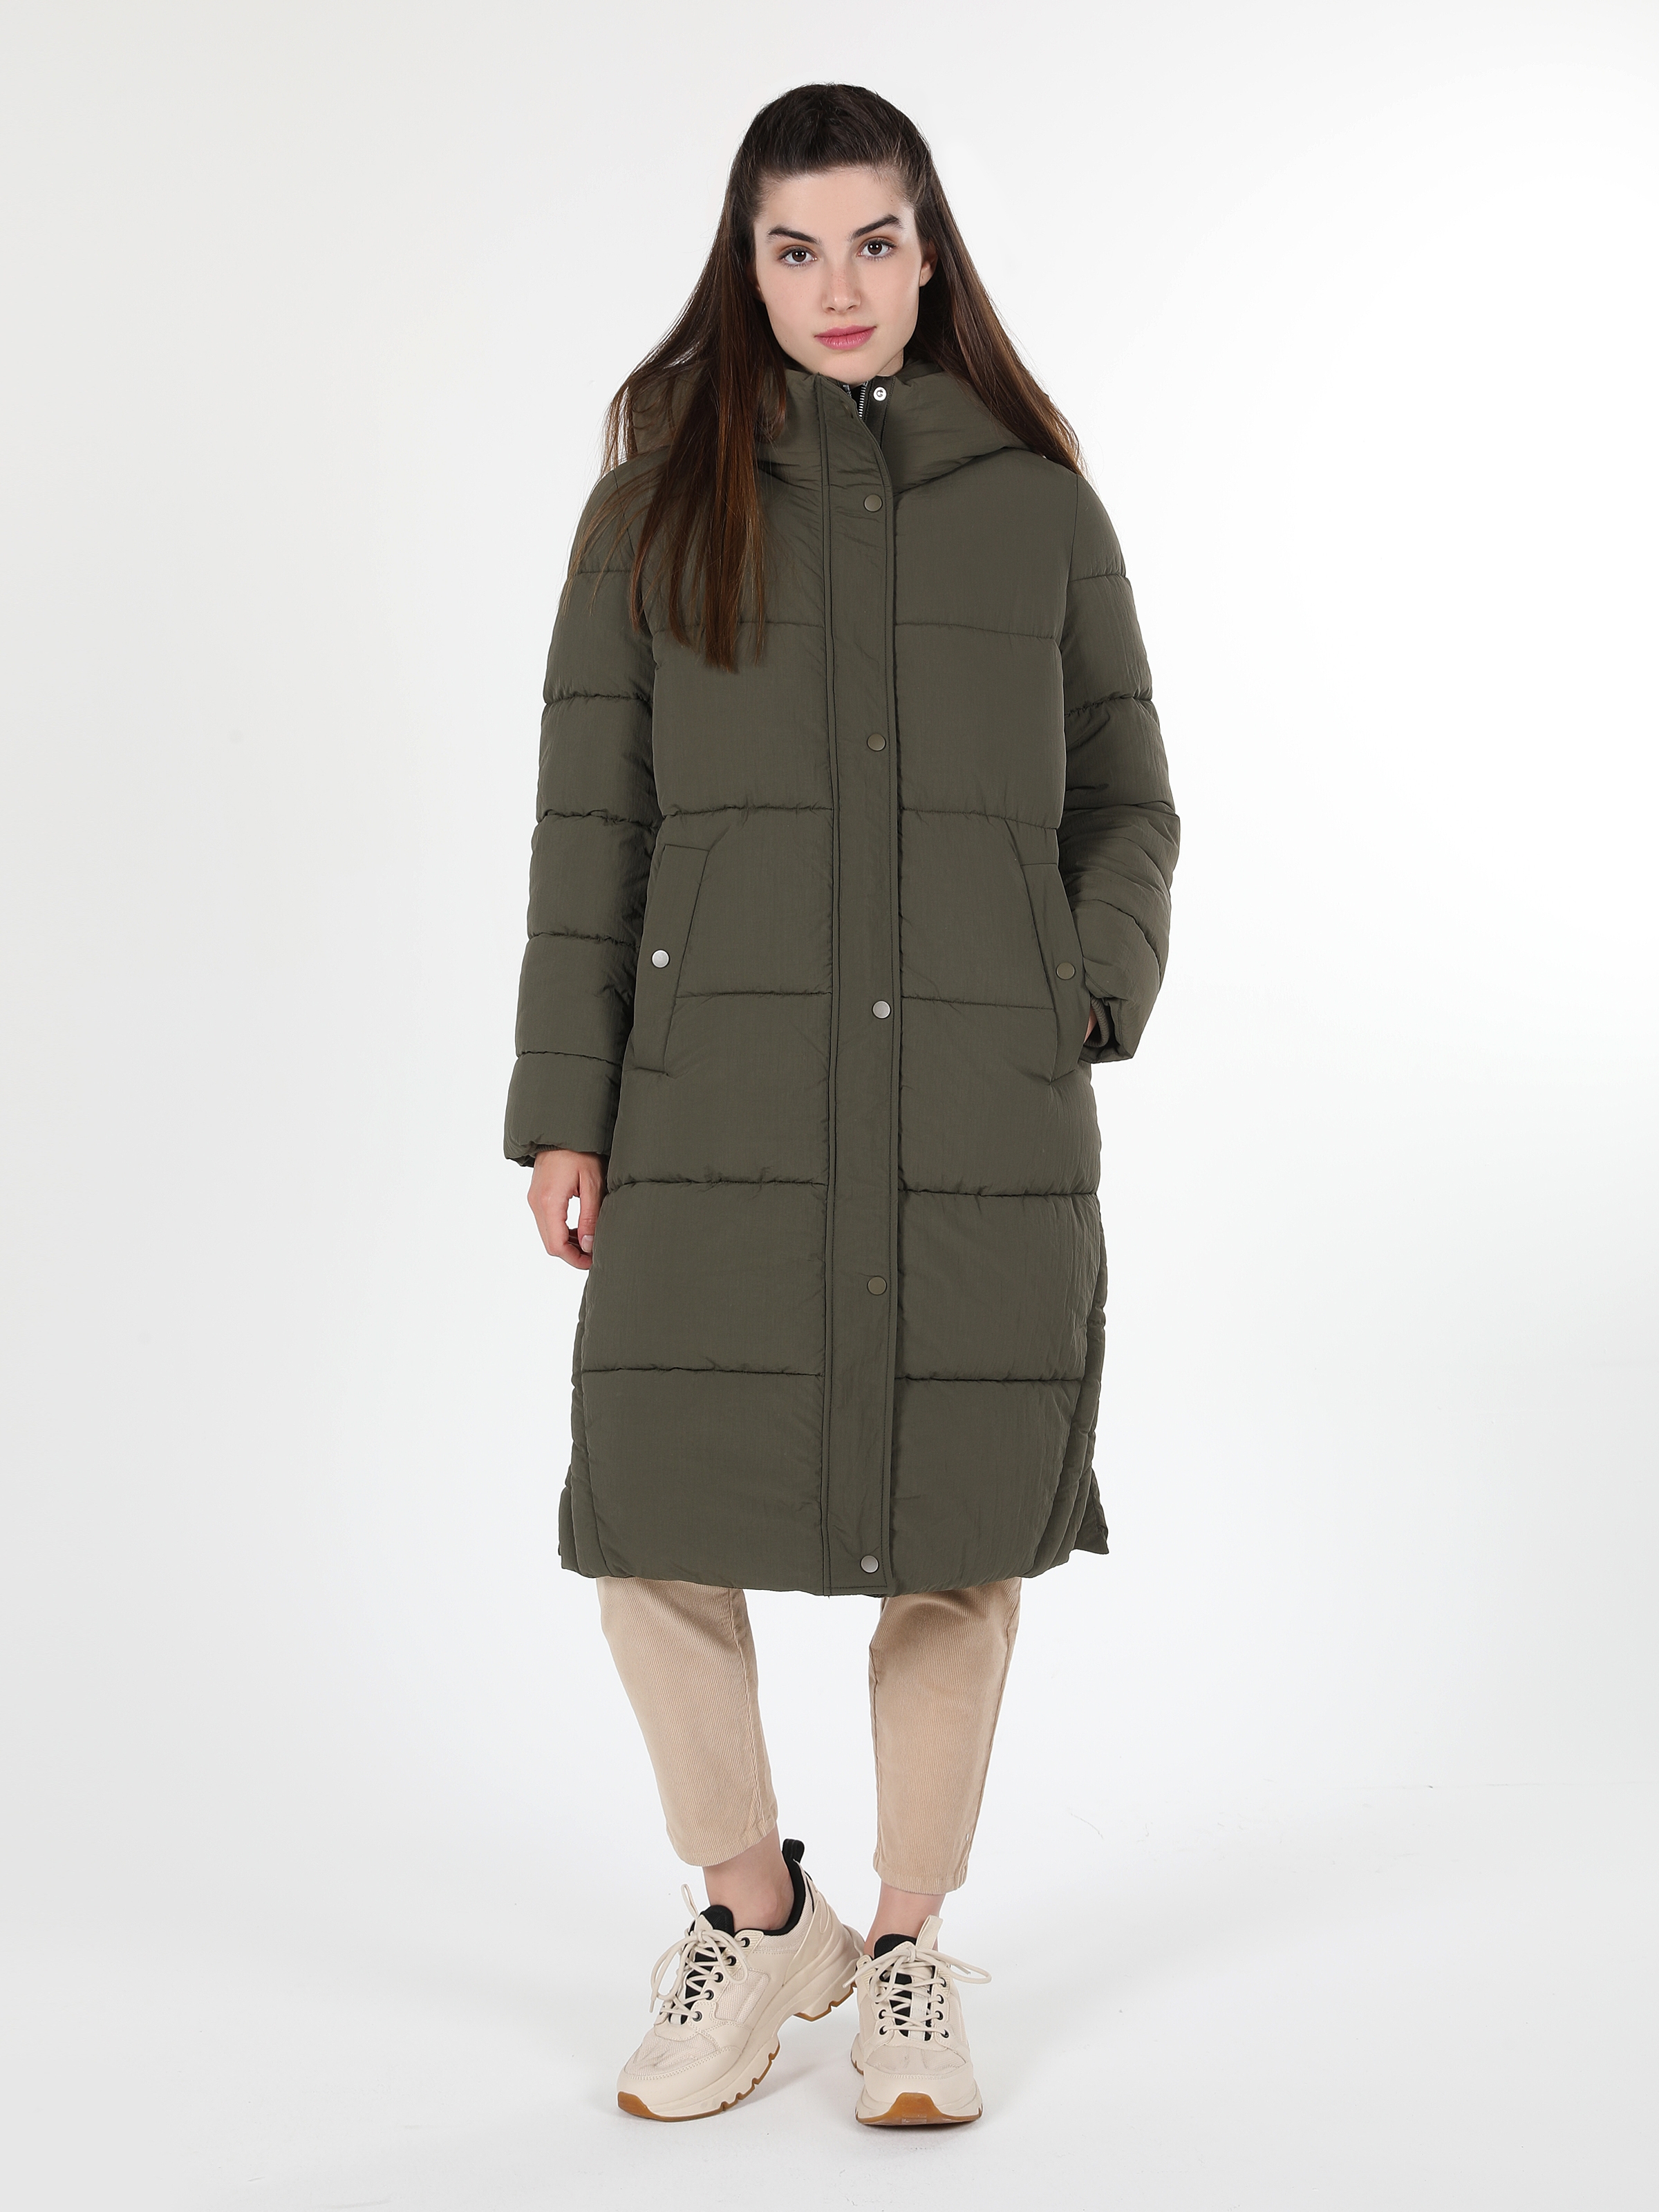 Показати інформацію про Пальто Жіноче Зелене Довге Класичного Крою   Cl1060955